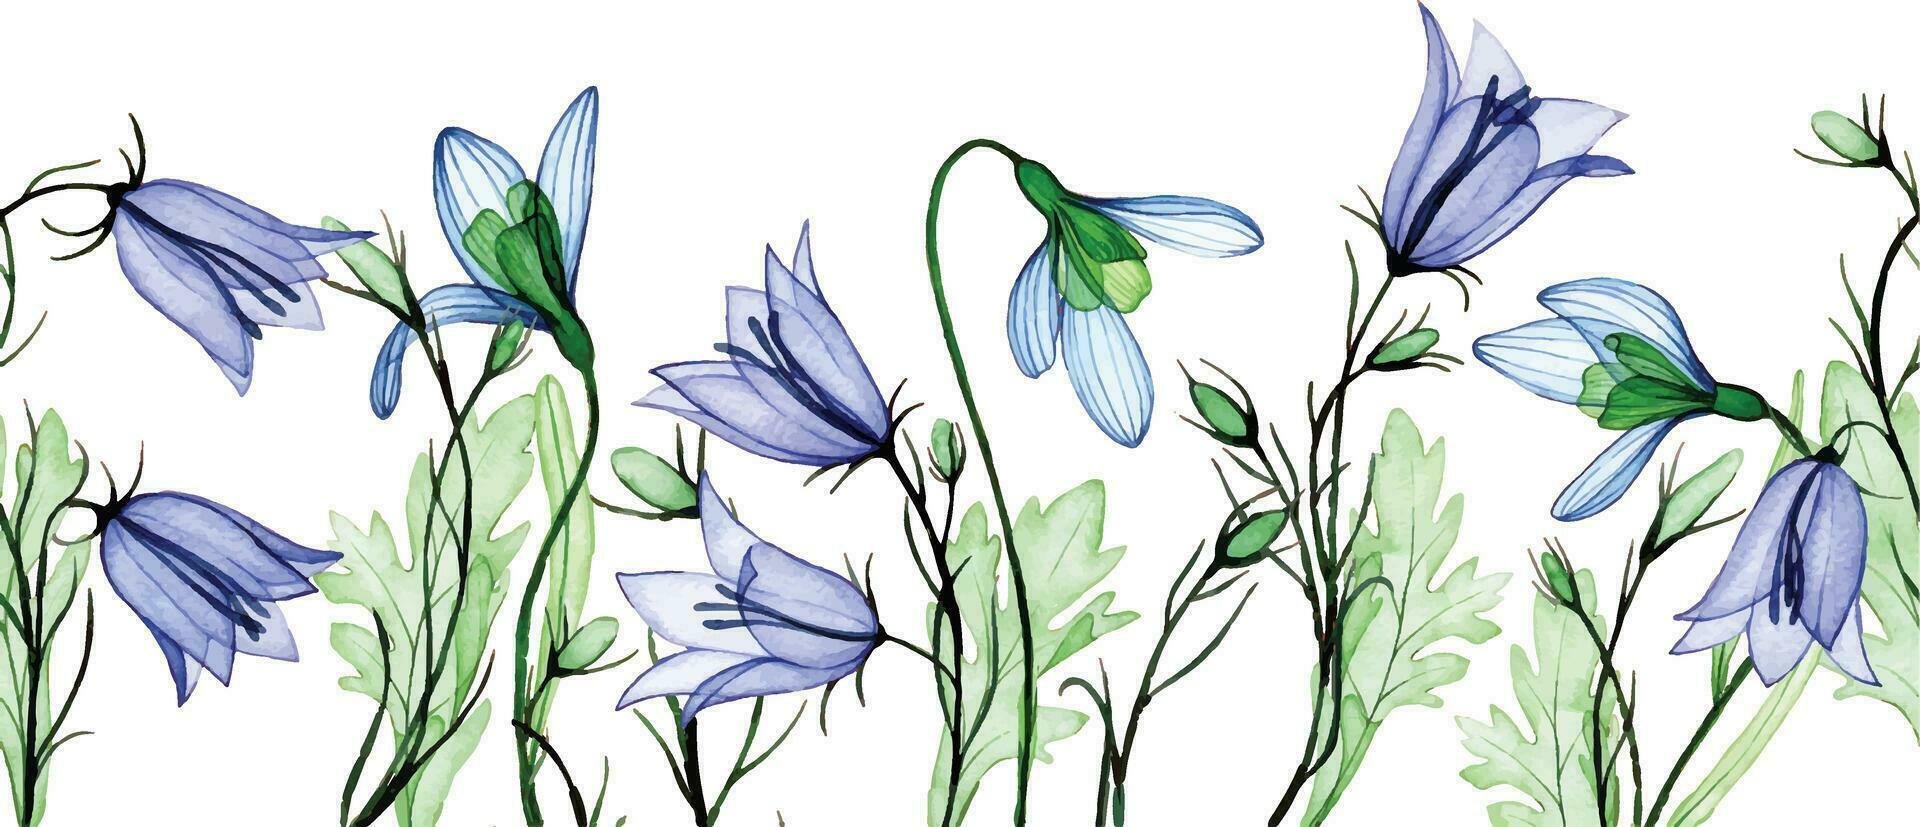 aguarela desenho. desatado fronteira, quadro, Armação do transparente flores floco de neve e bluebell. Primavera flores silvestres, raio X vetor